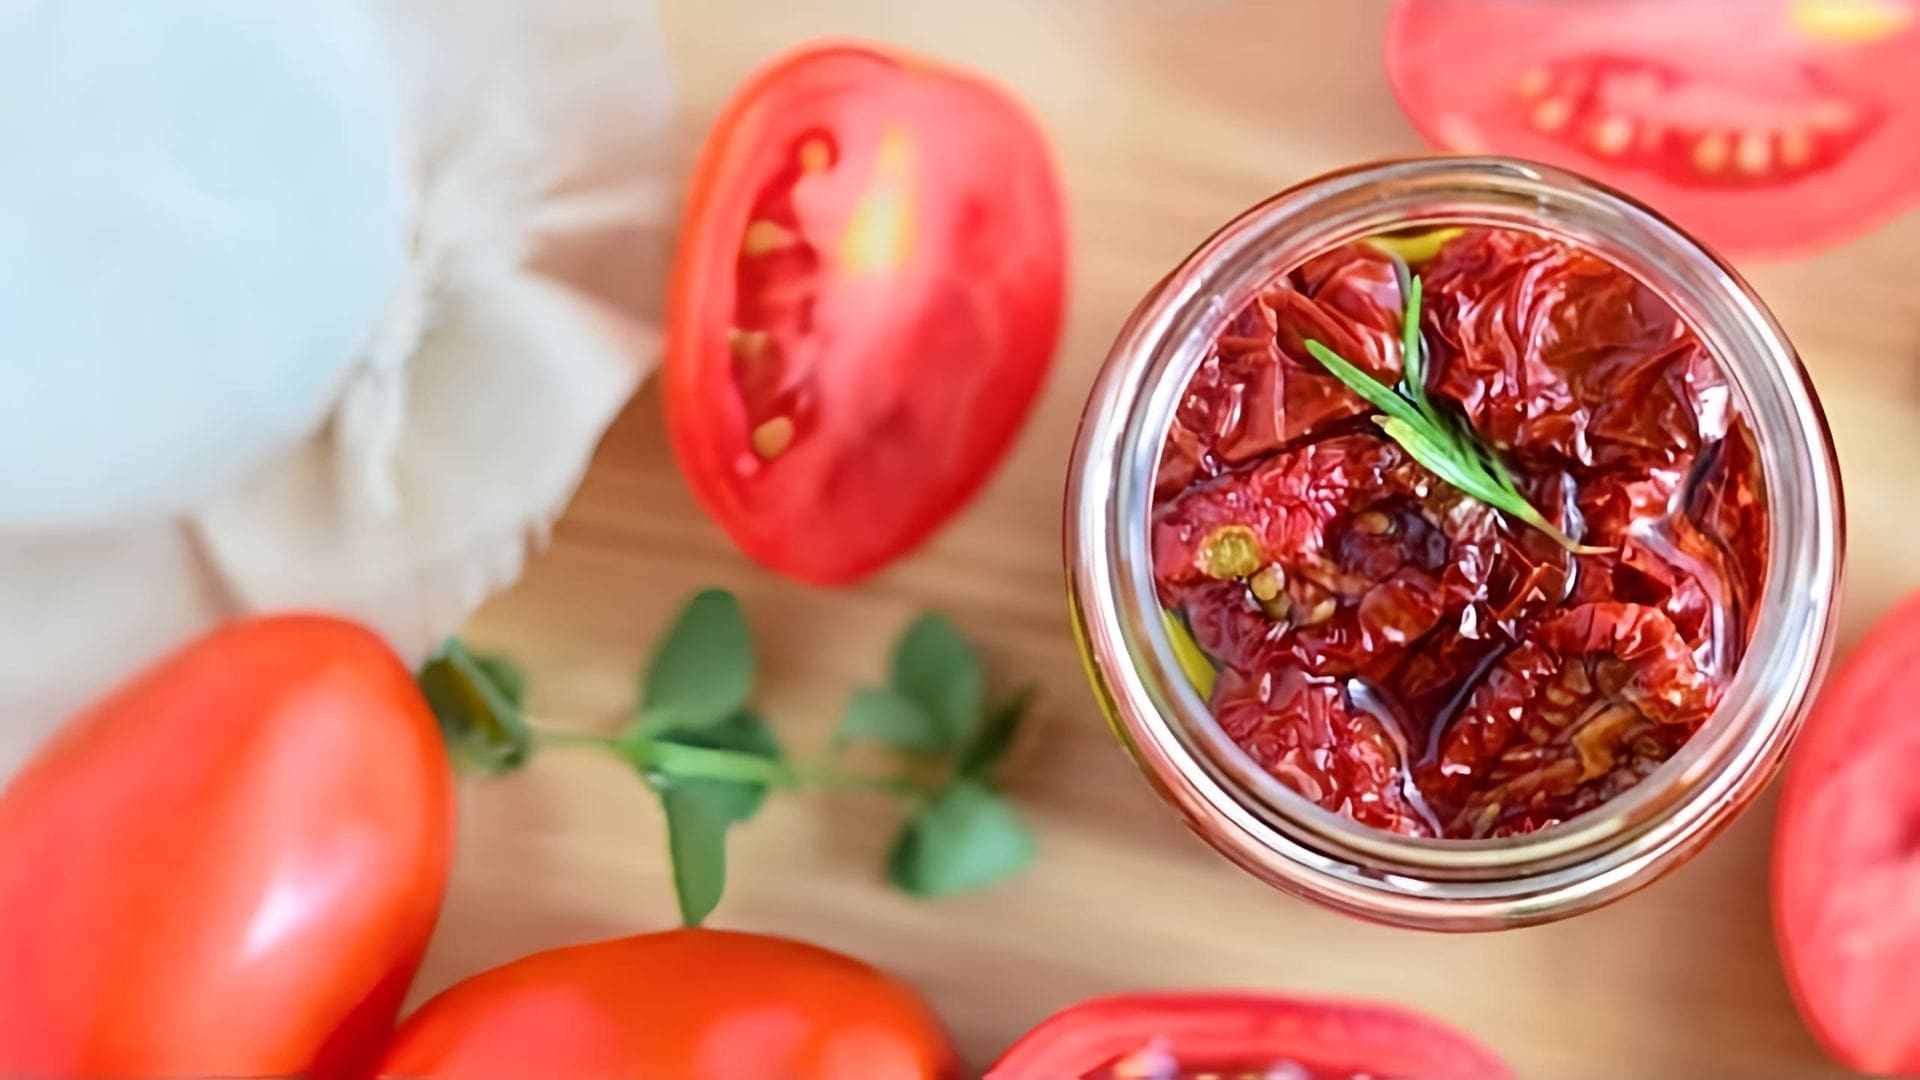 В этом видео демонстрируется рецепт приготовления вяленых помидоров